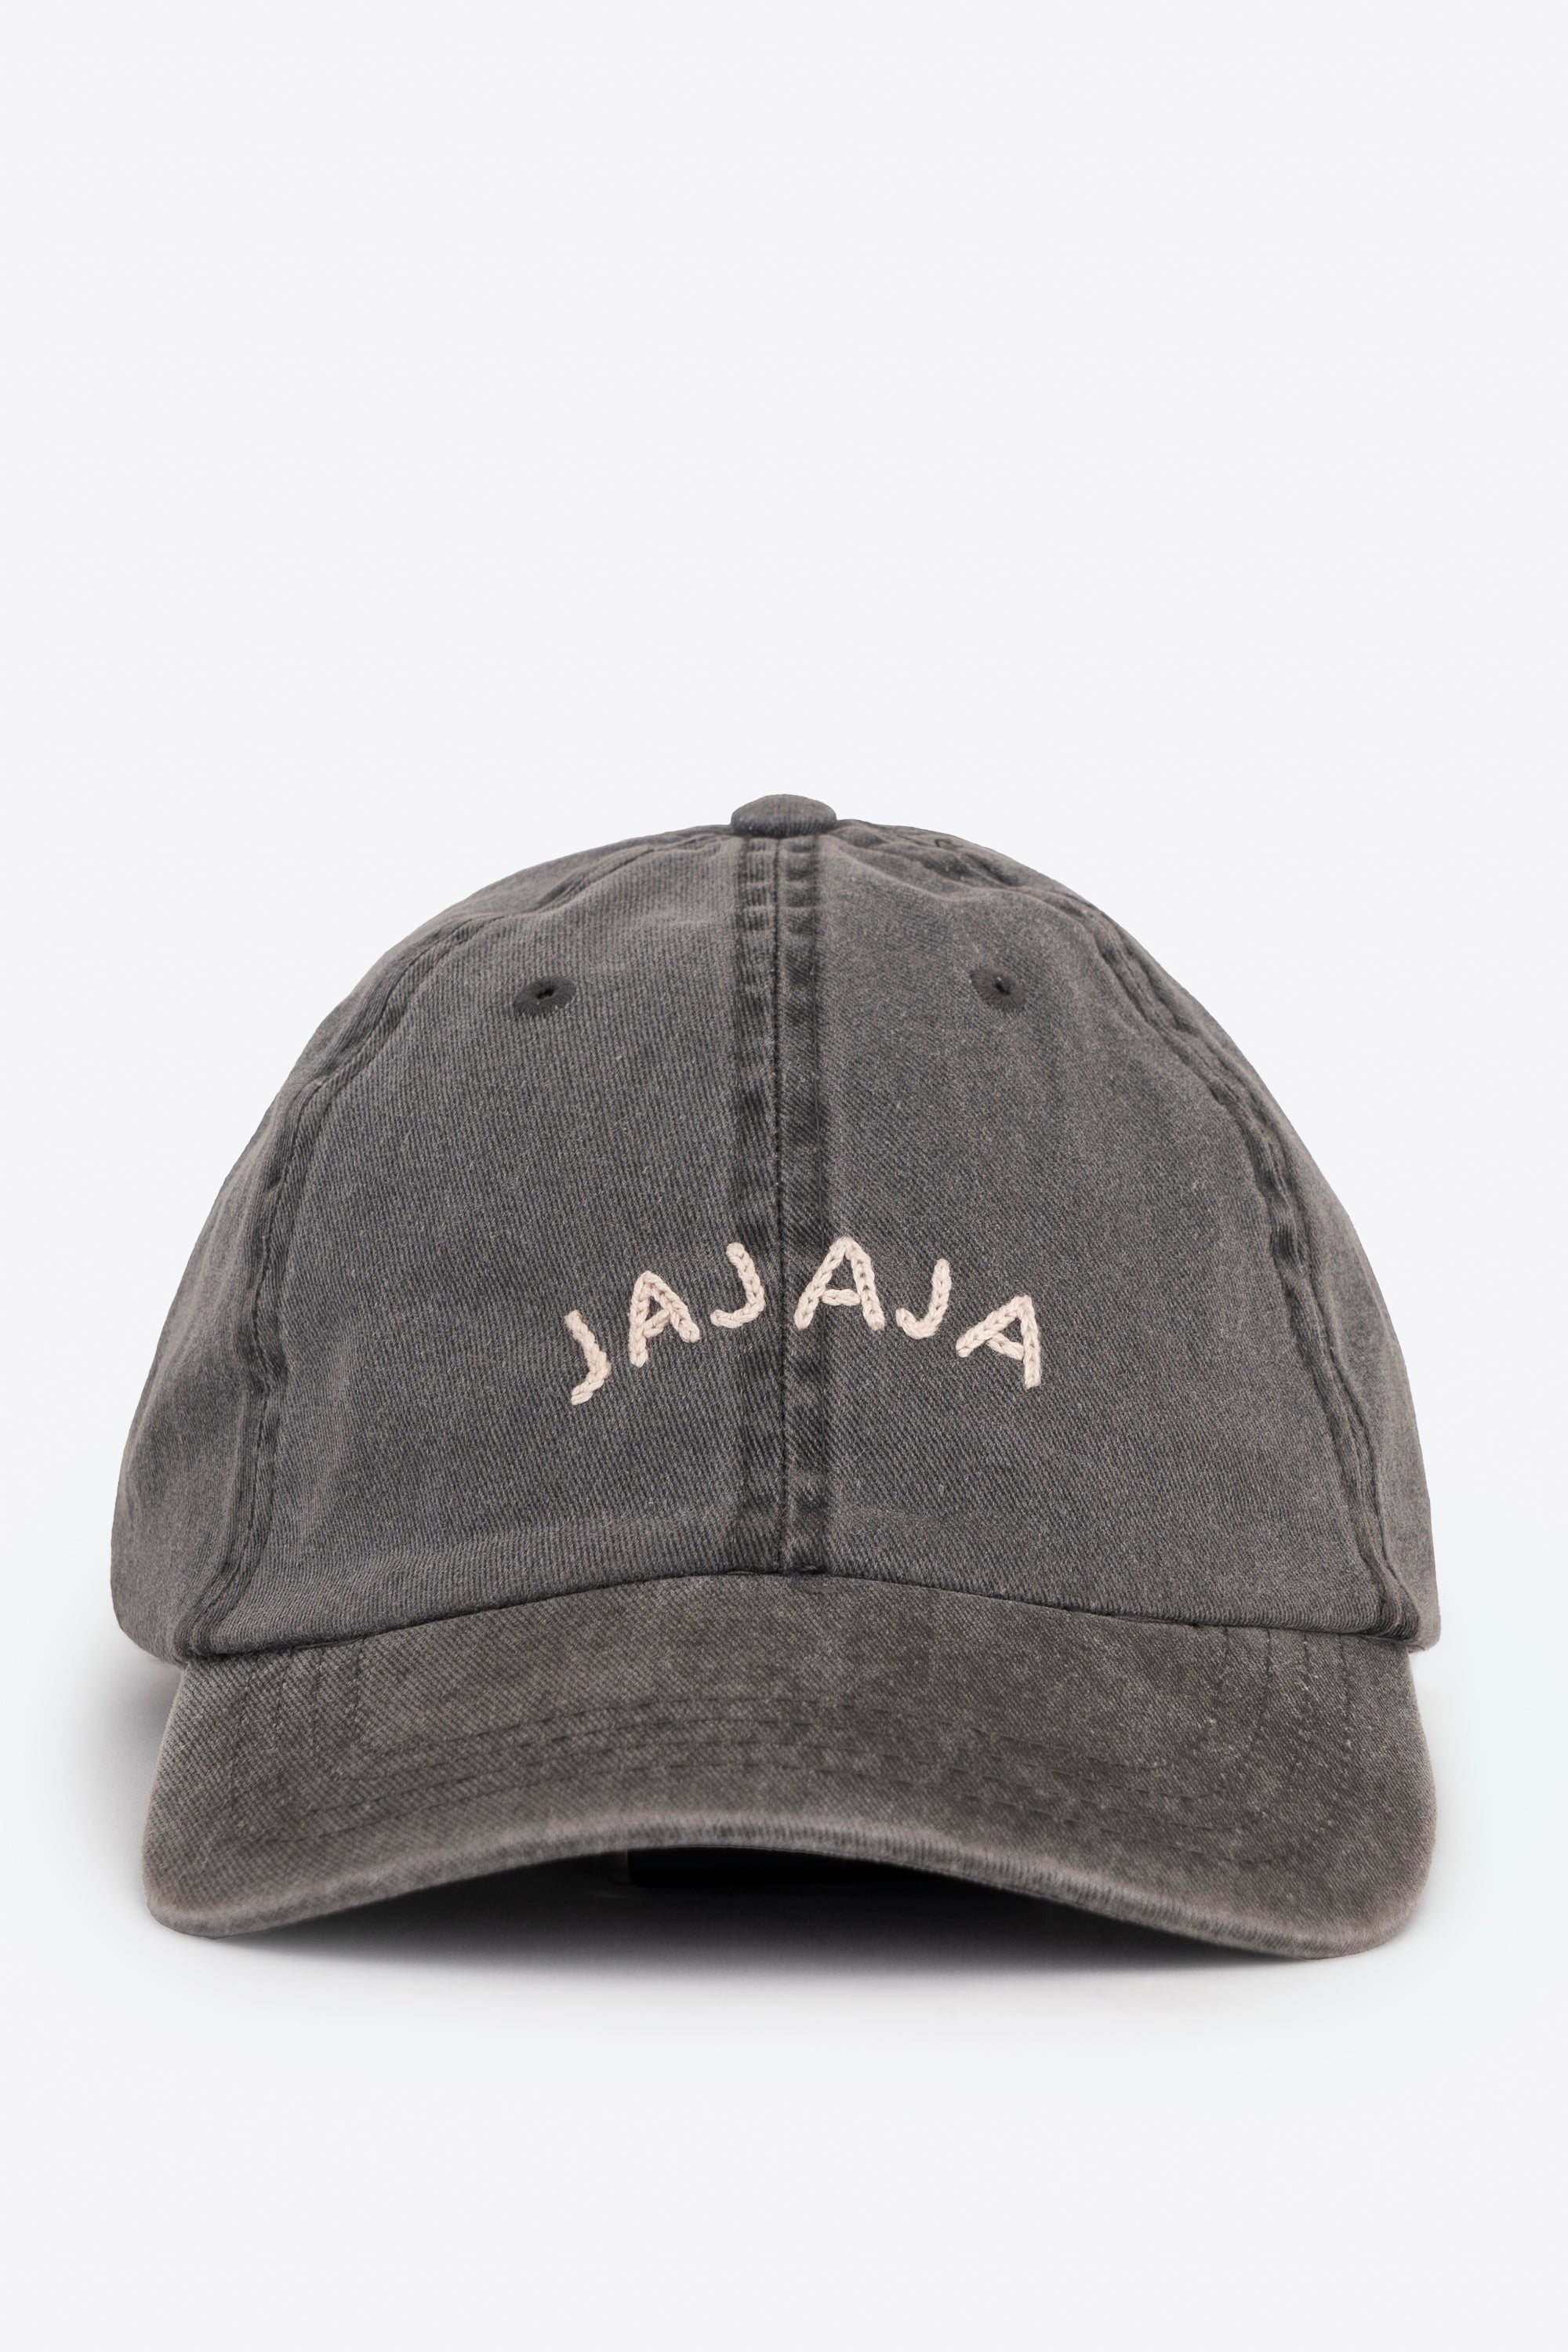 JAJAJA BASEBALL CAP